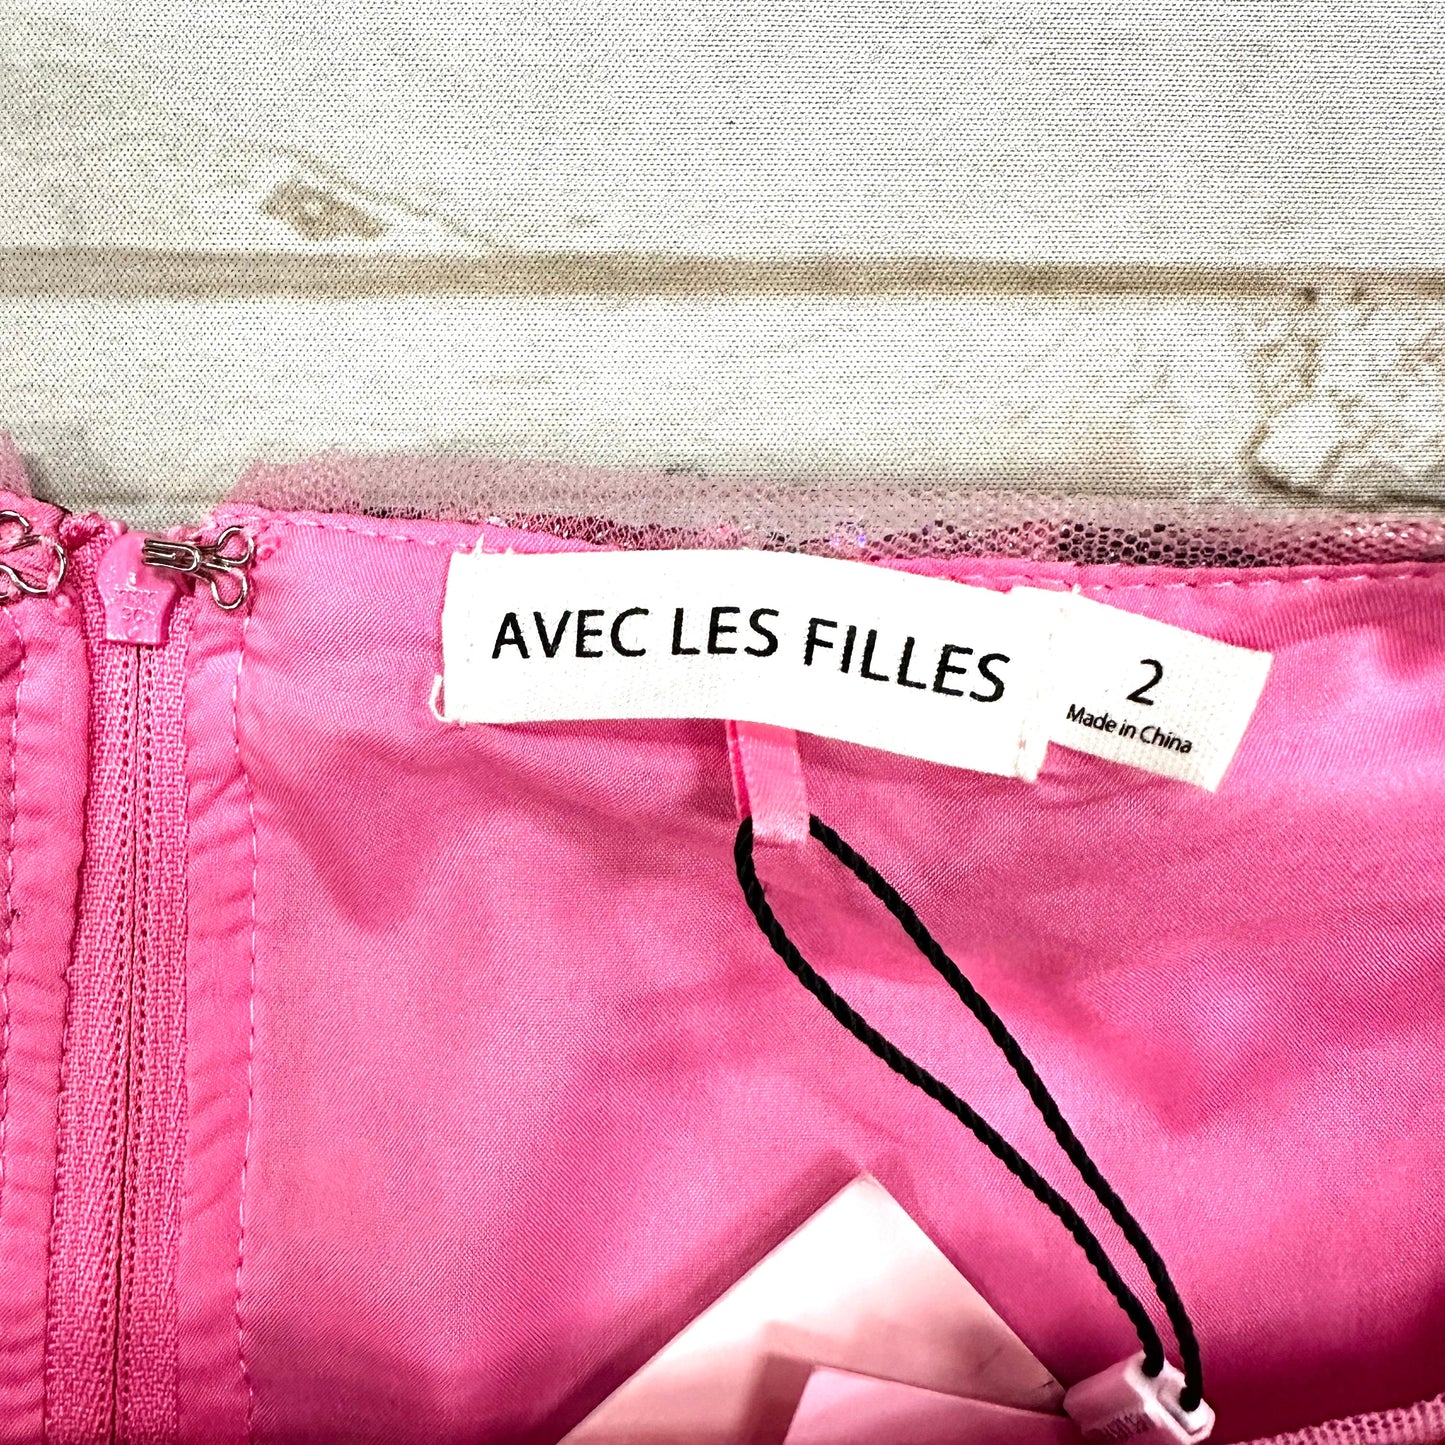 Pink & Silver Dress Designer By Avec Les Filles, Size: Xs